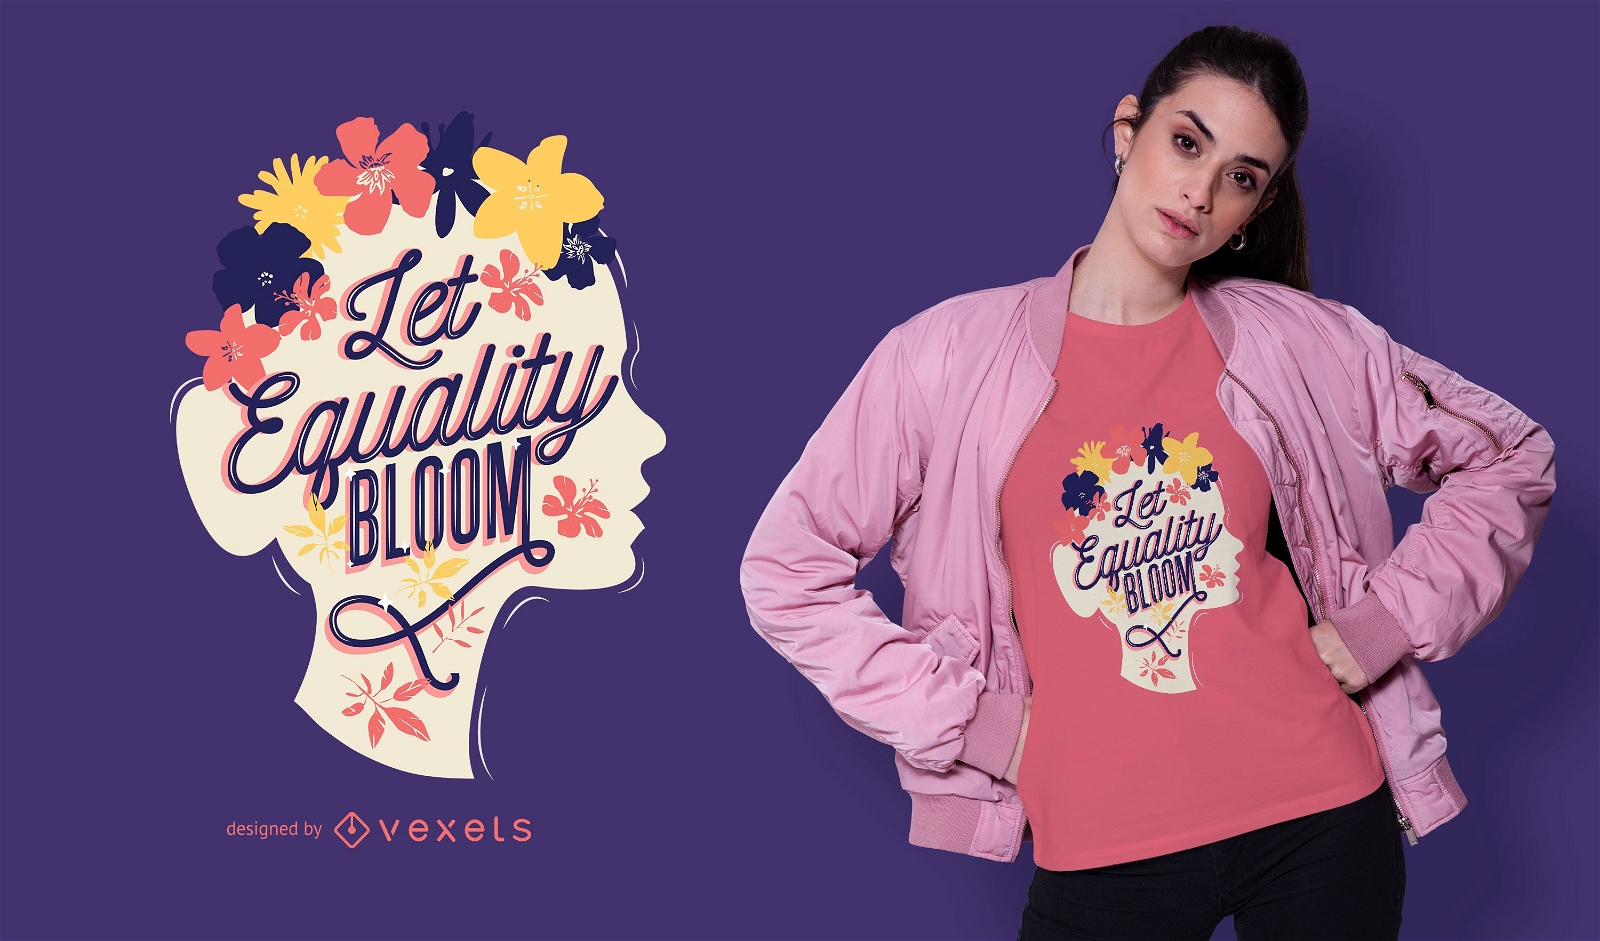 Let equality bloom t-shirt design